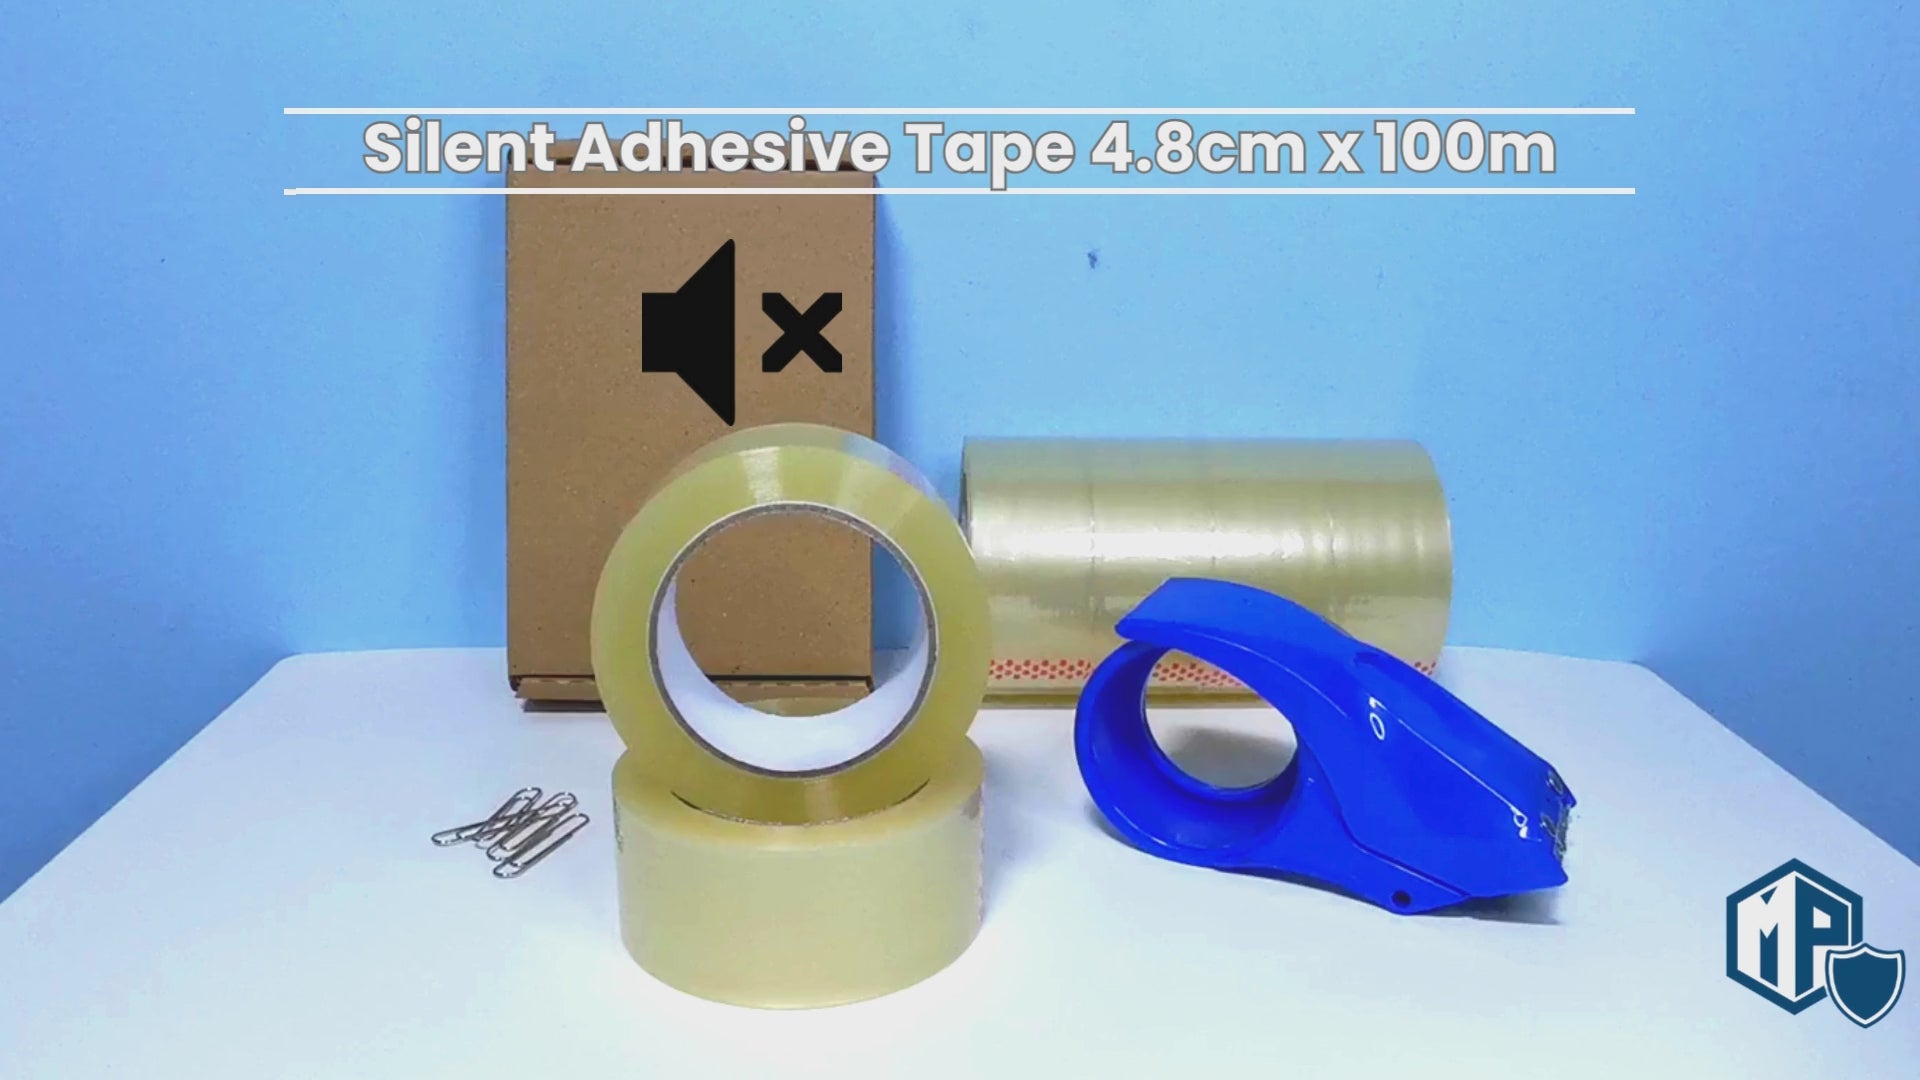 Silent Adhesive Tape 4.8cm x 100m